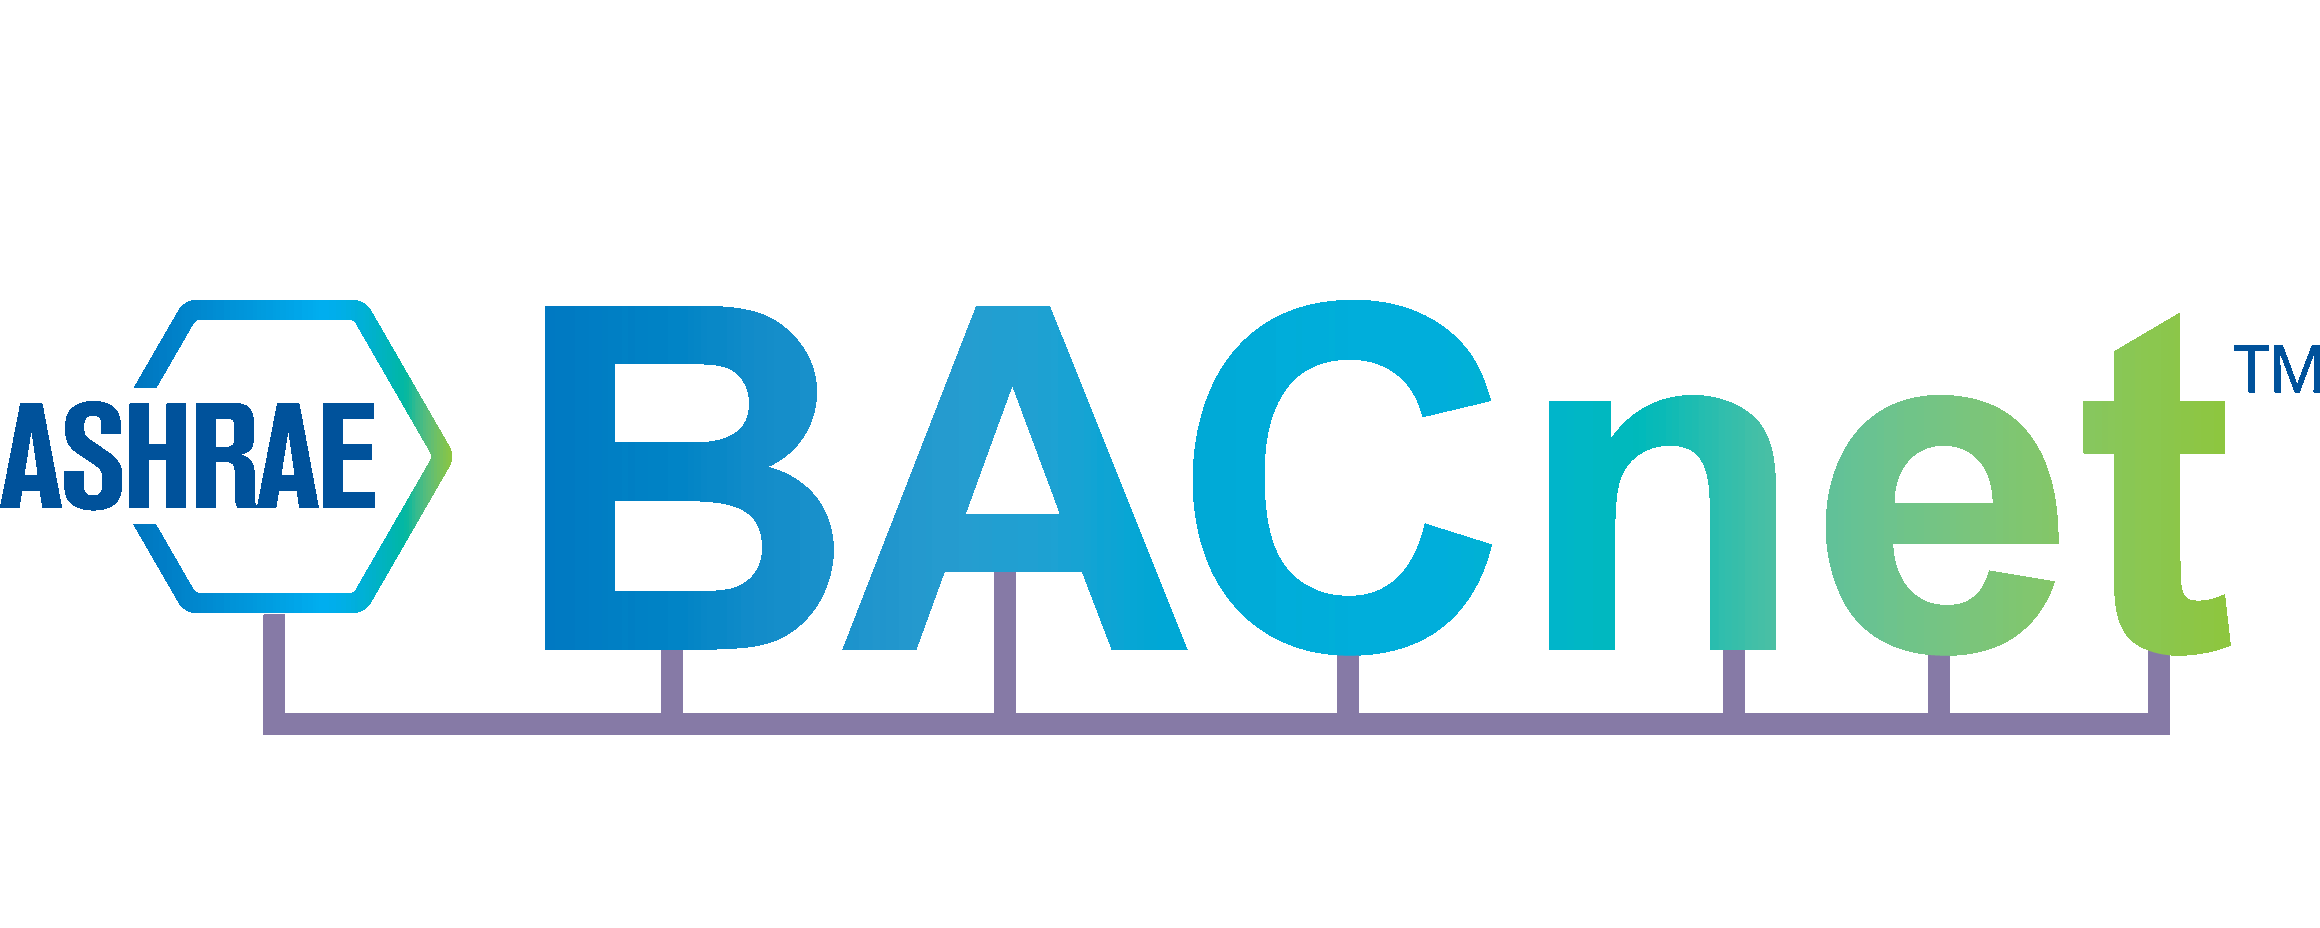 bacnet-logo-new - Setpoint |Setpoint